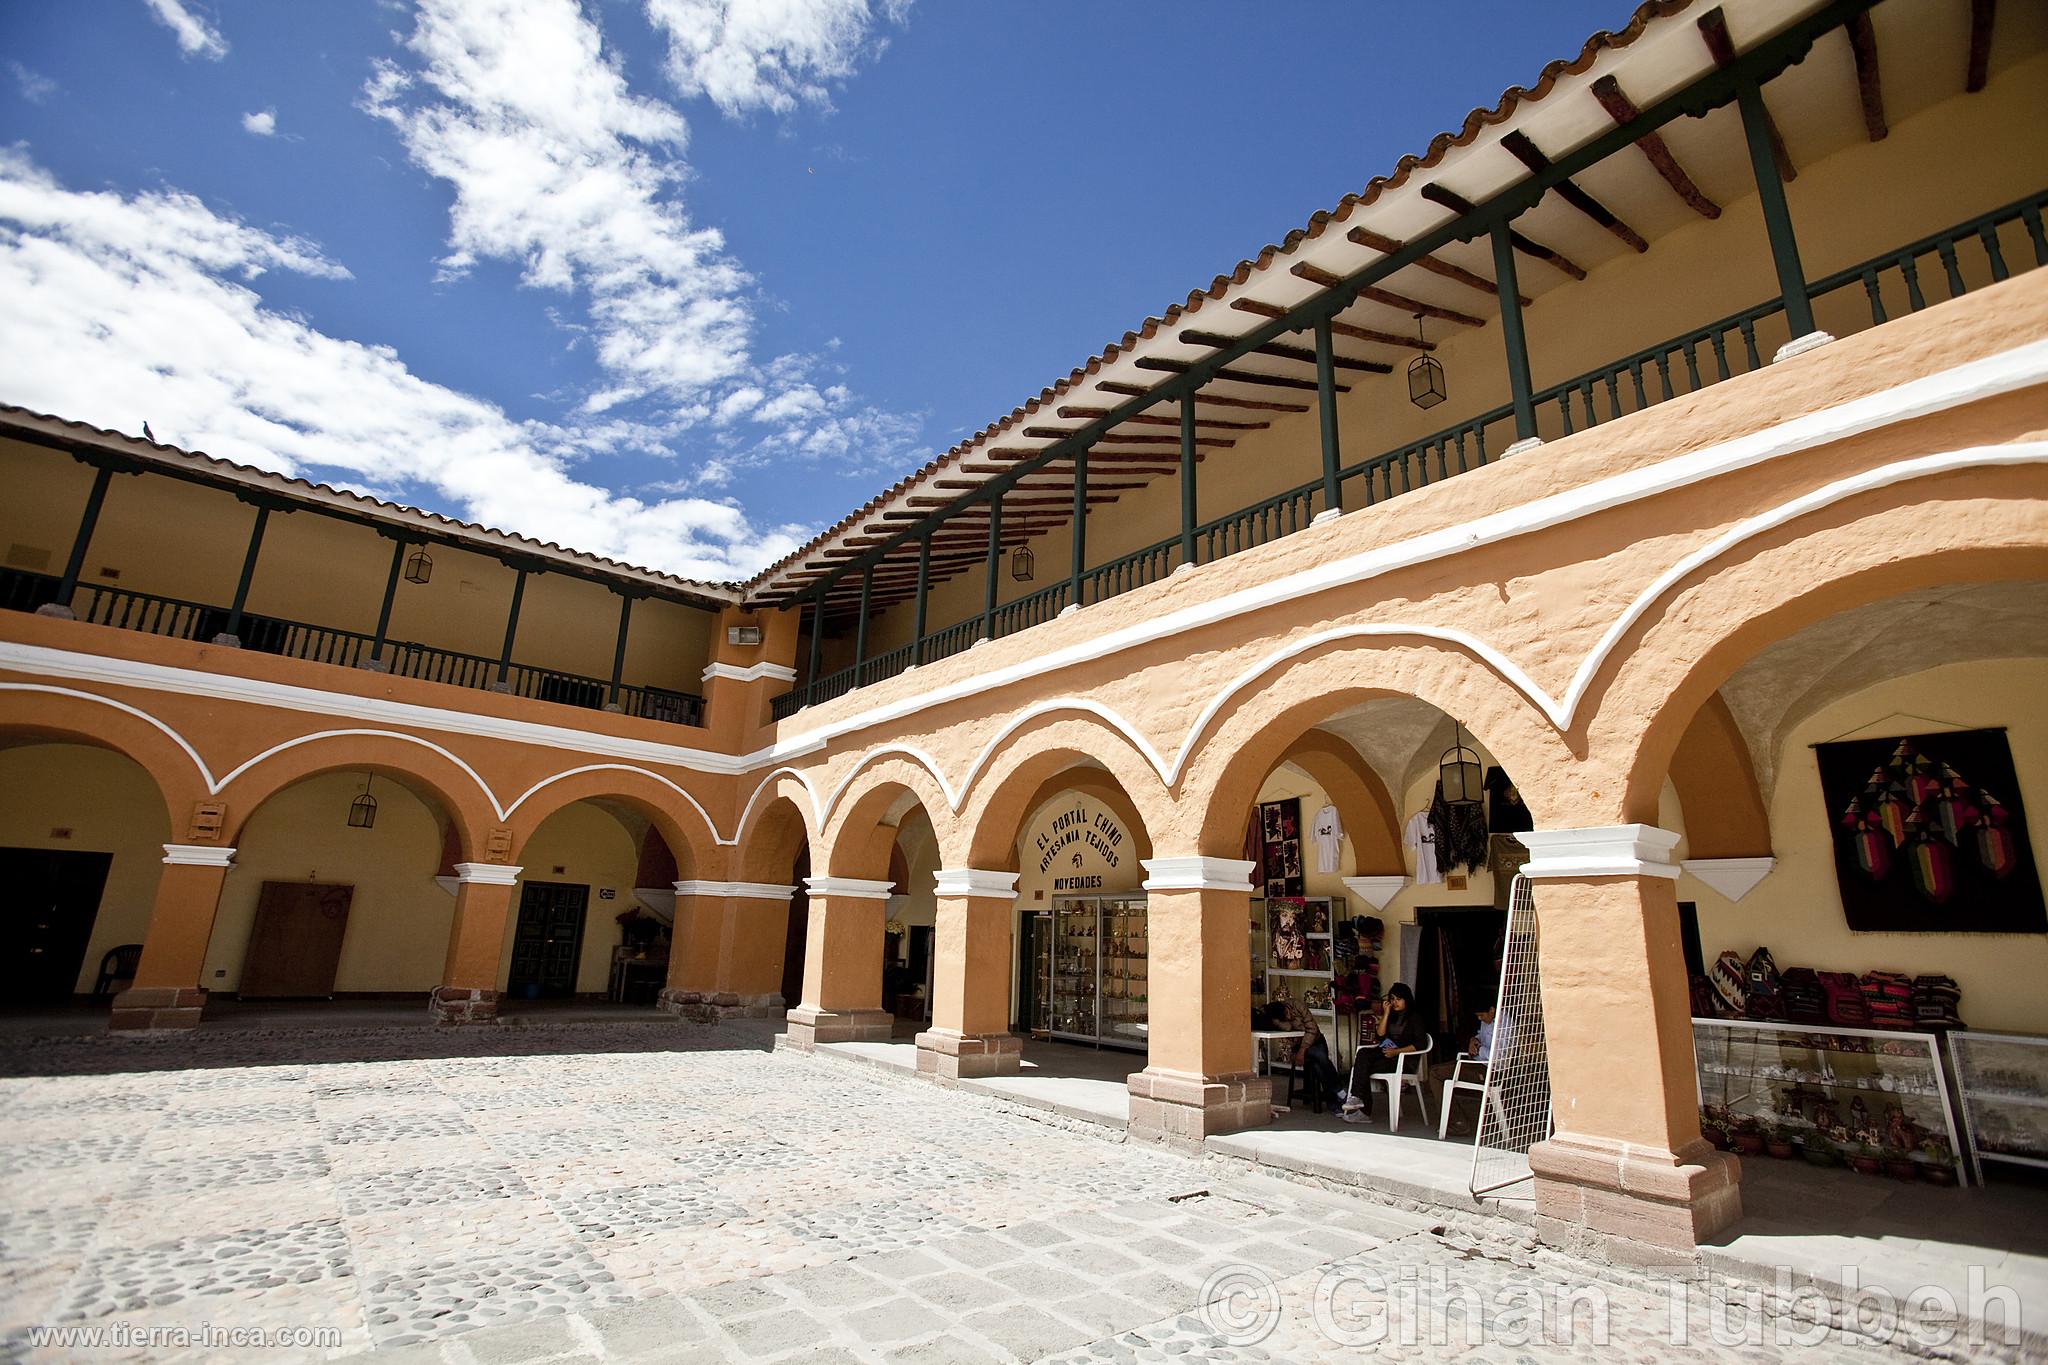 Centro Turstico Cultural San Cristobal